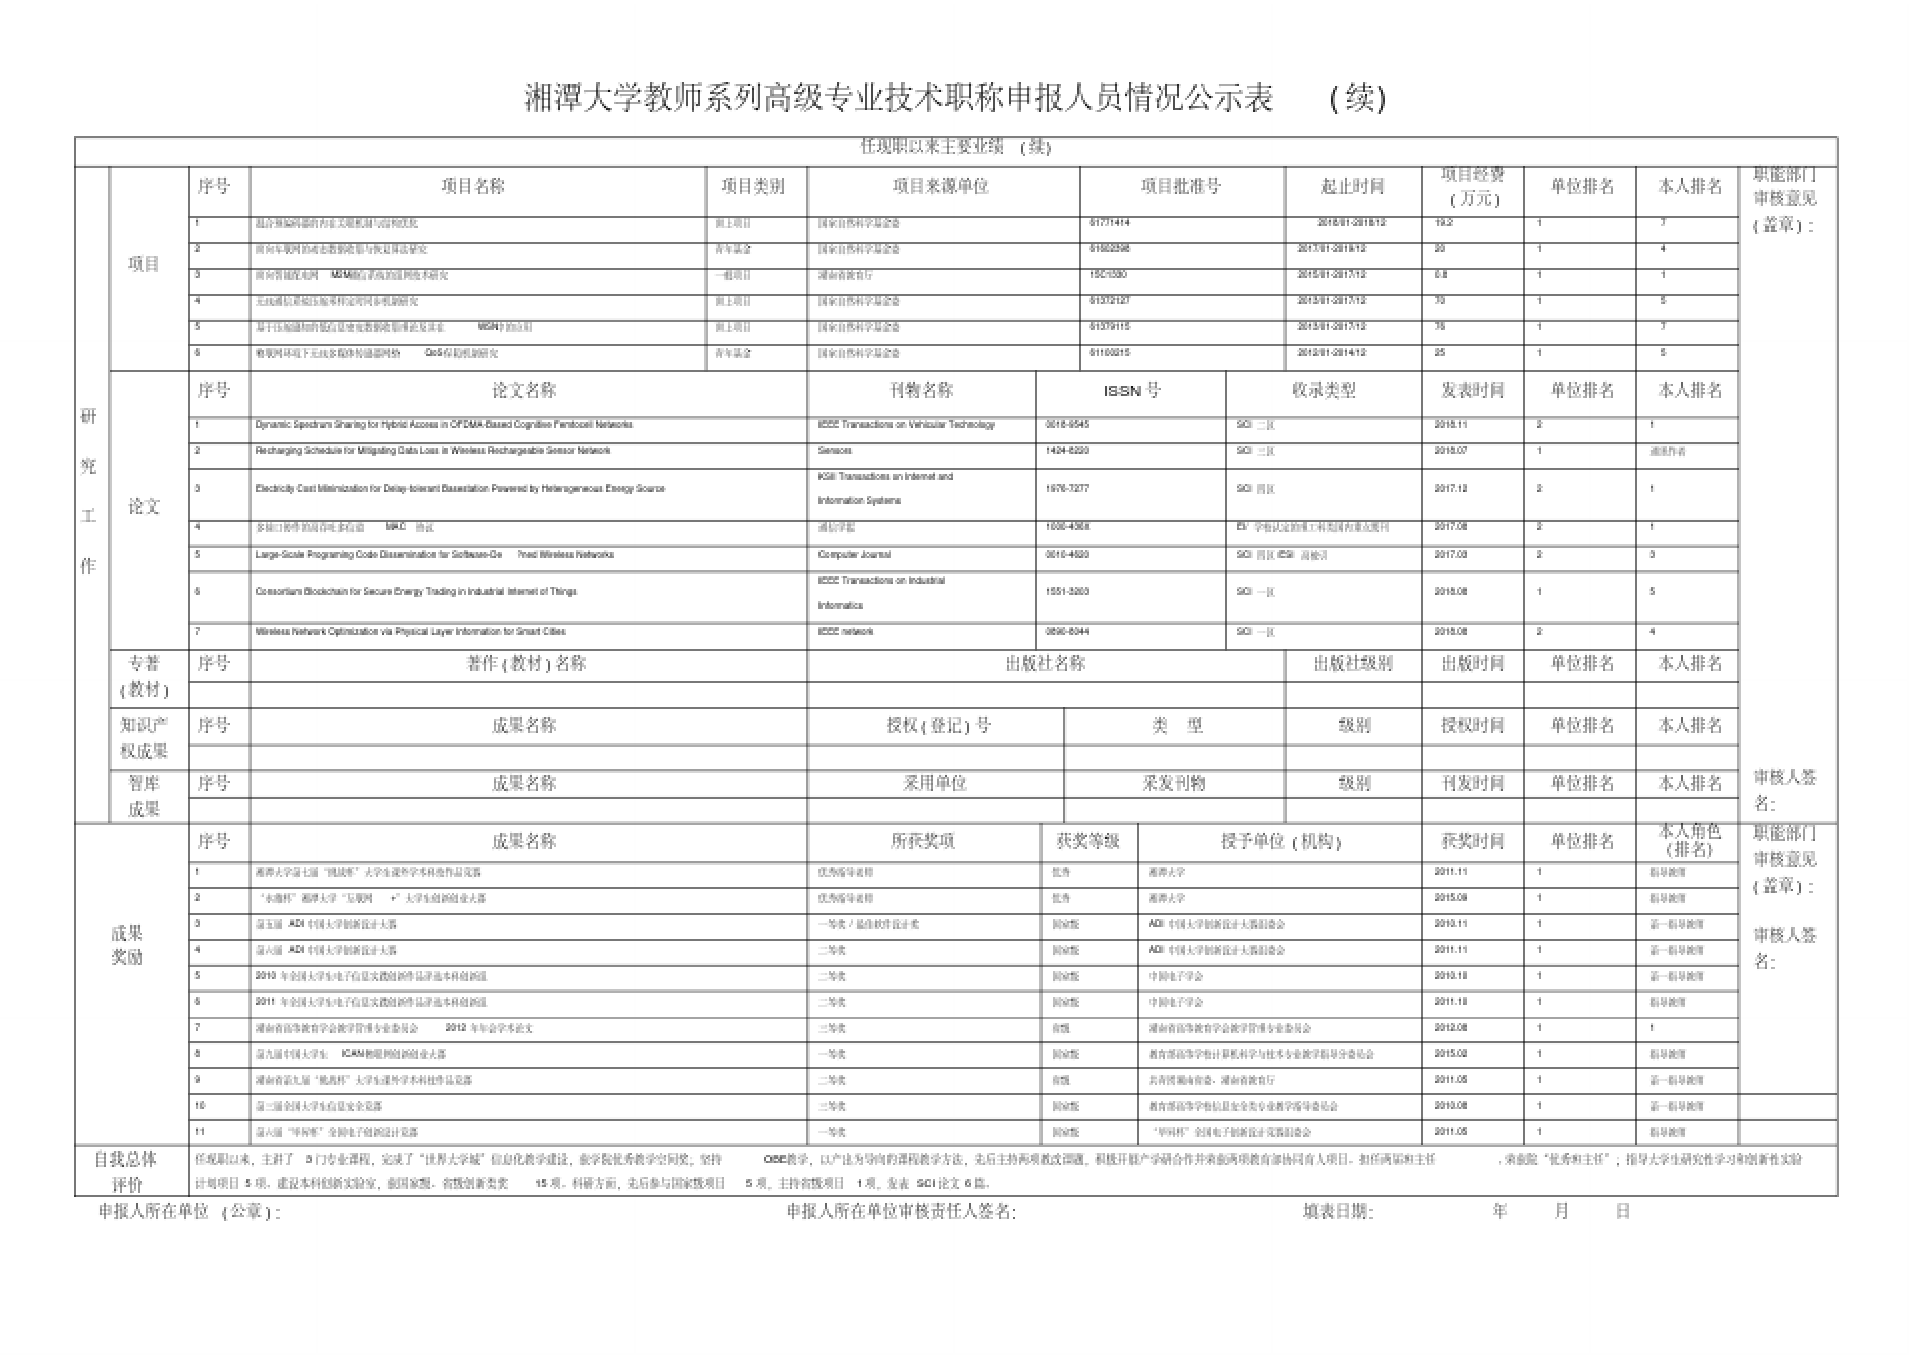 湘潭大学教师系列高级专业技术职称申报人员情况公示表.doc_2.png